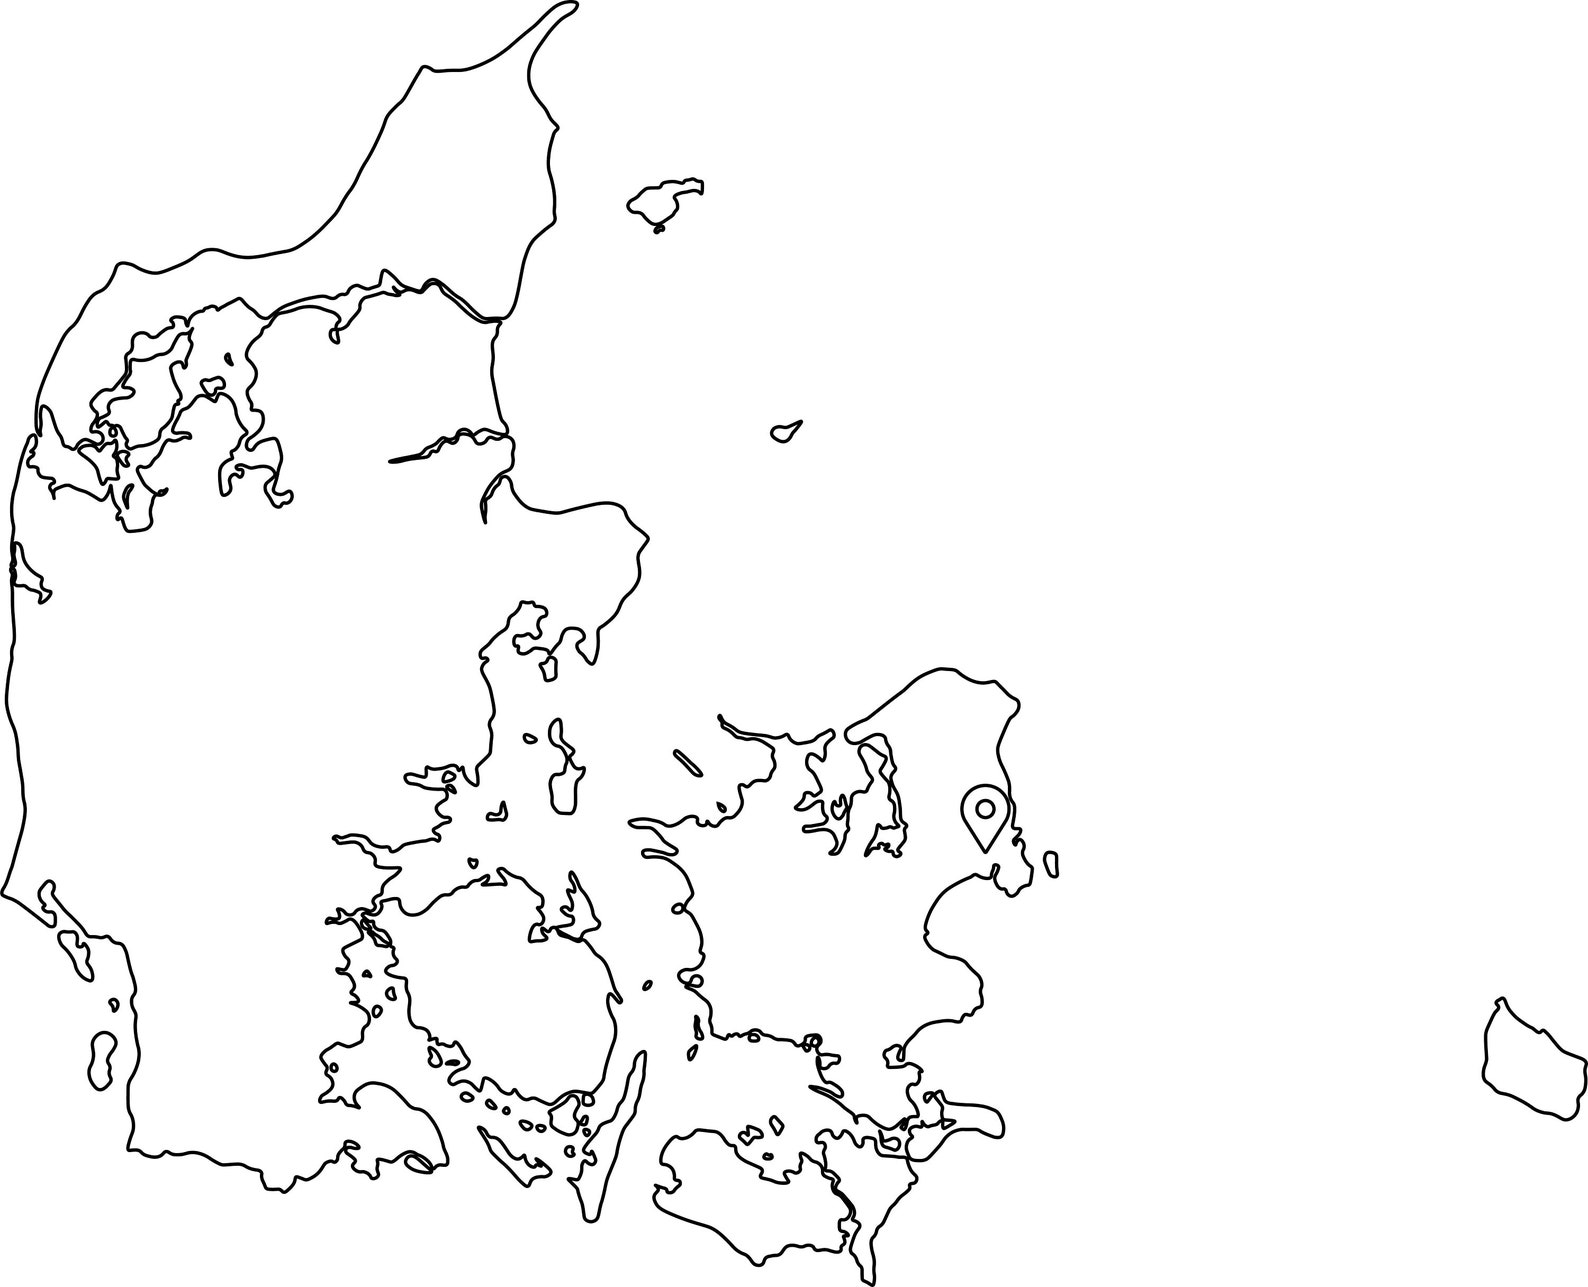 Copenhagen Denmark Map Capital City Country Location Pin Black | Etsy